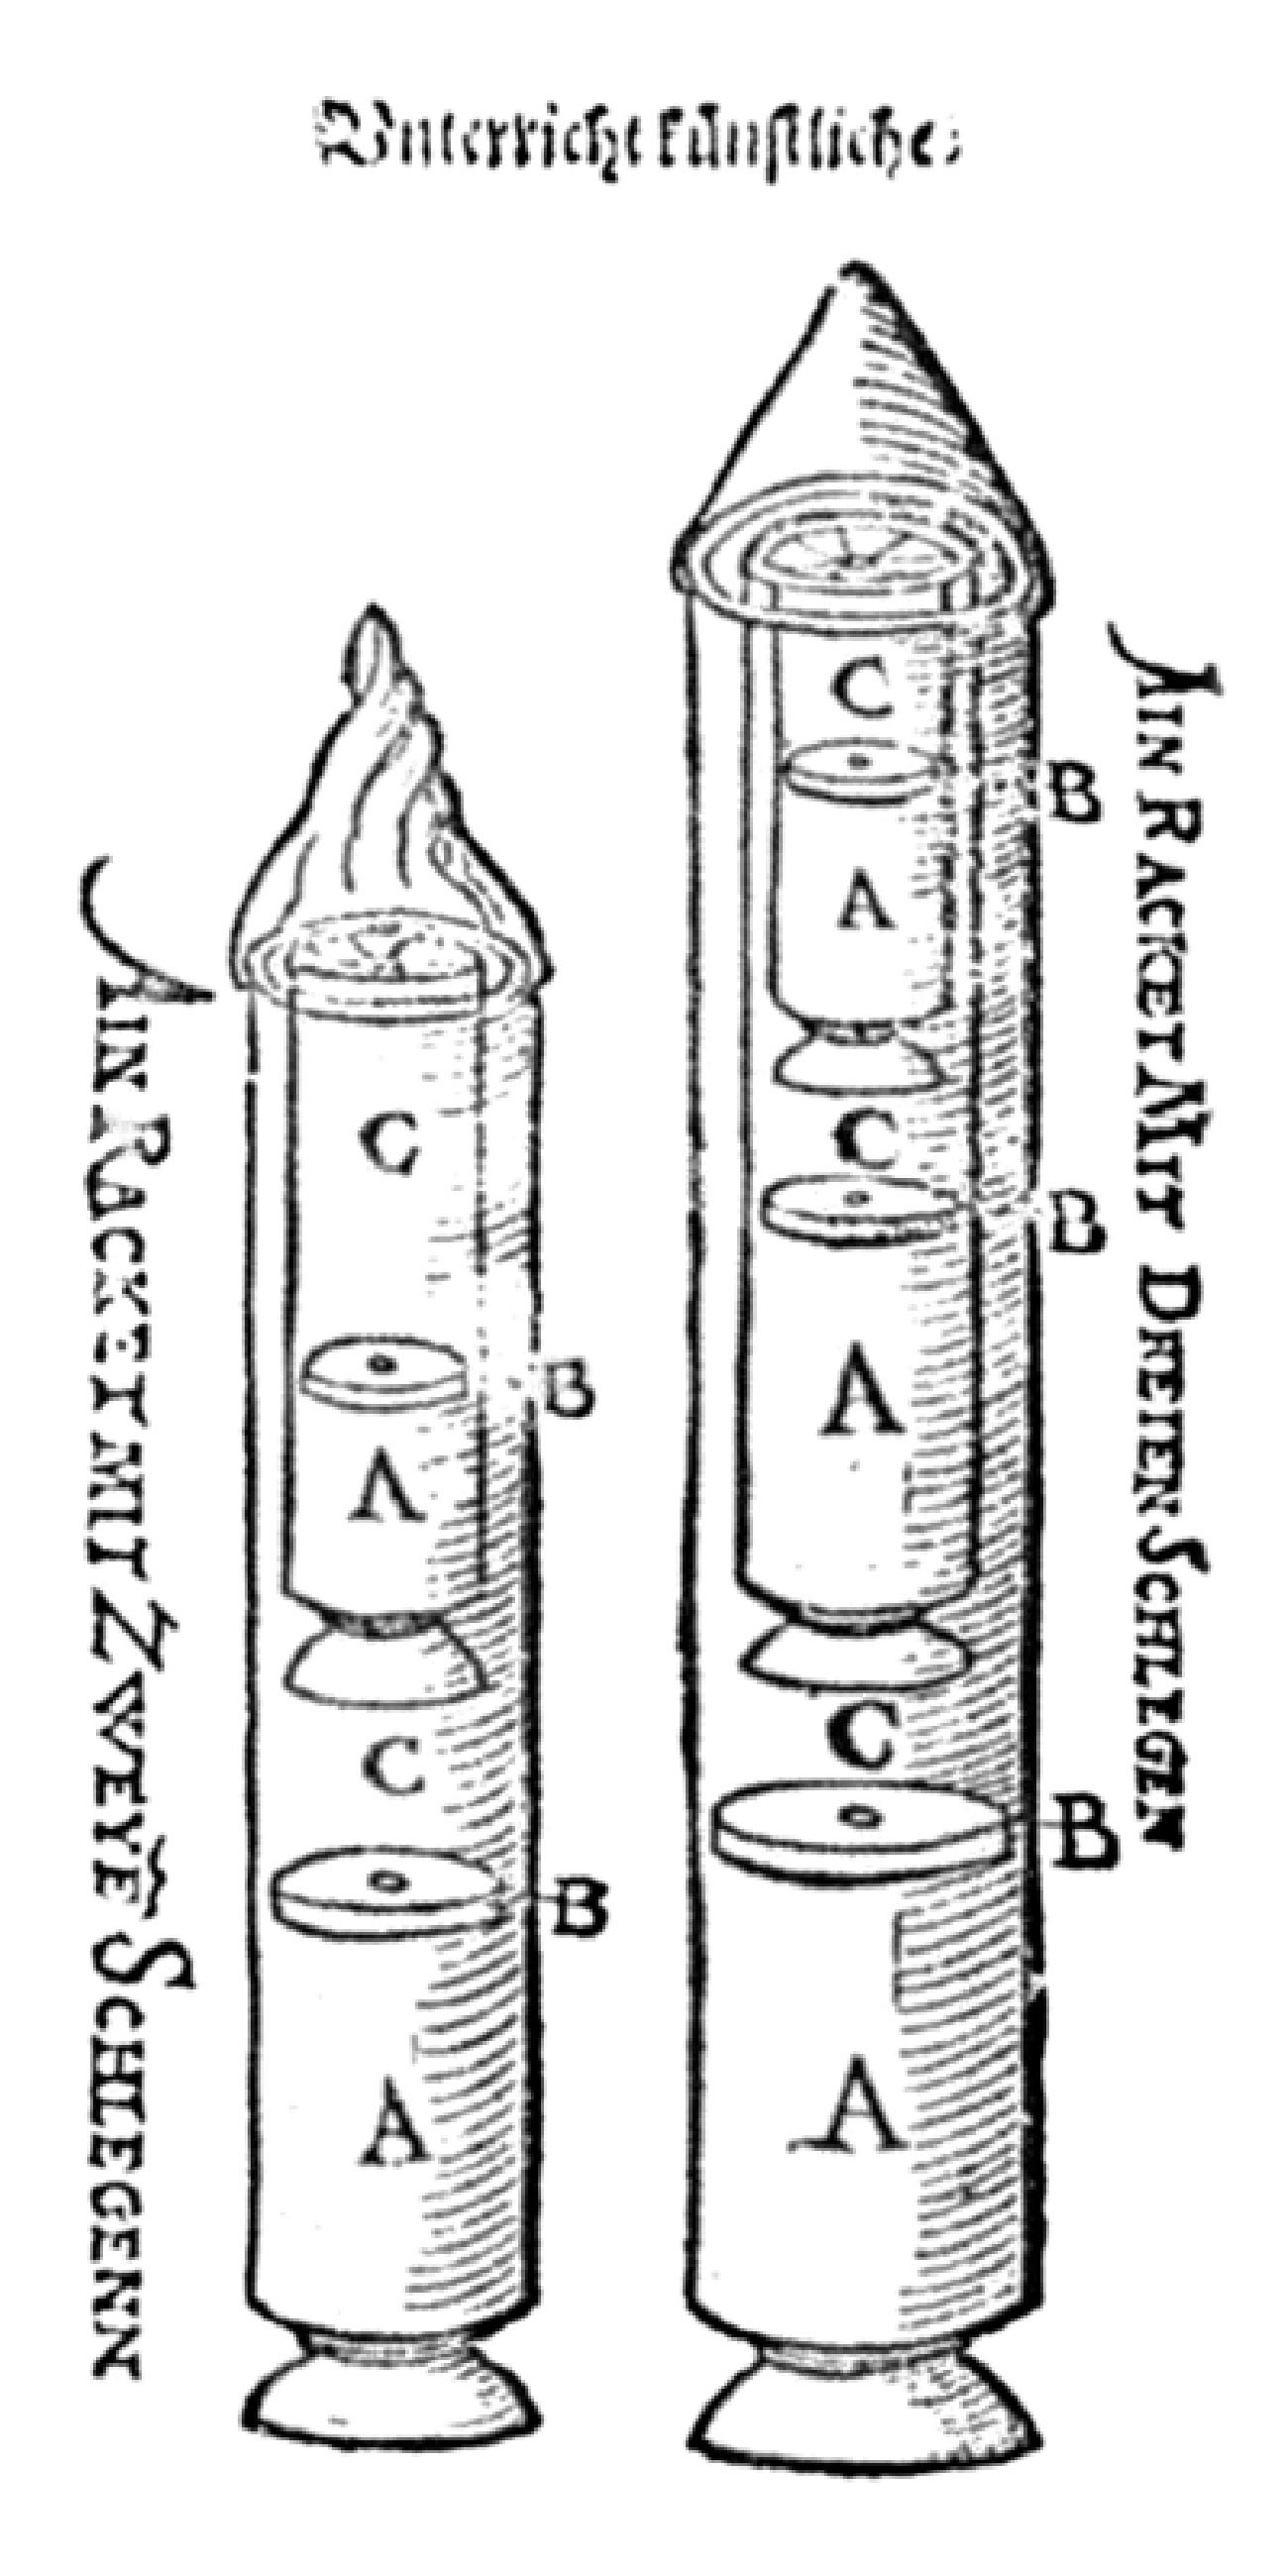 コンラド・ハアスのロケットの図案、1529年